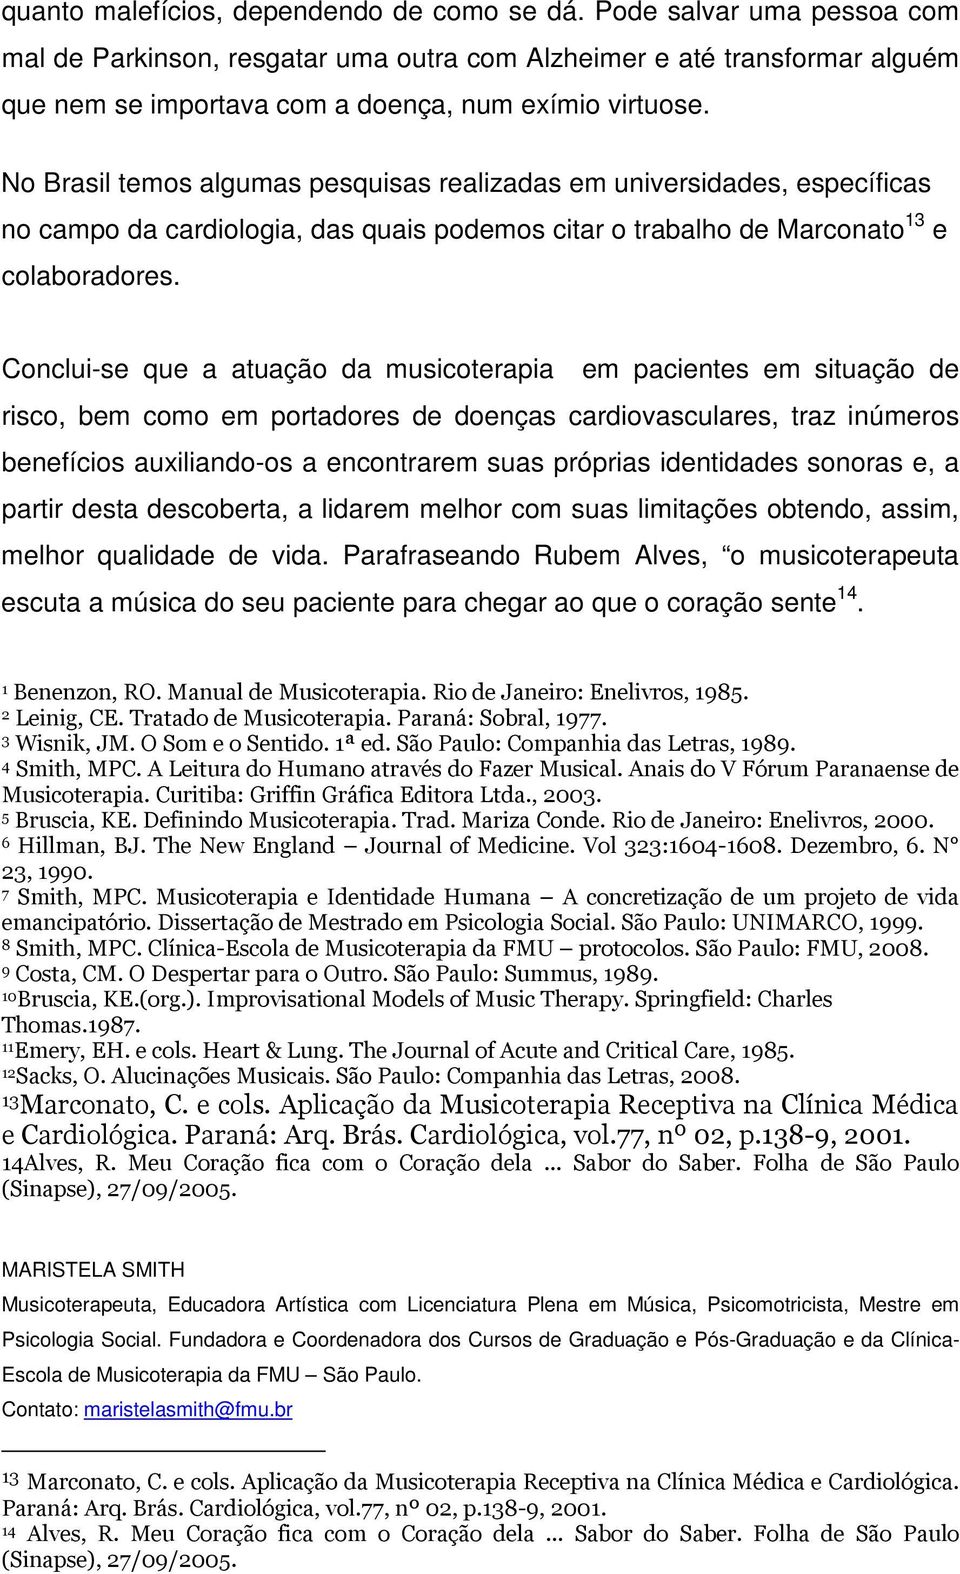 No Brasil temos algumas pesquisas realizadas em universidades, específicas no campo da cardiologia, das quais podemos citar o trabalho de Marconato 13 e colaboradores.